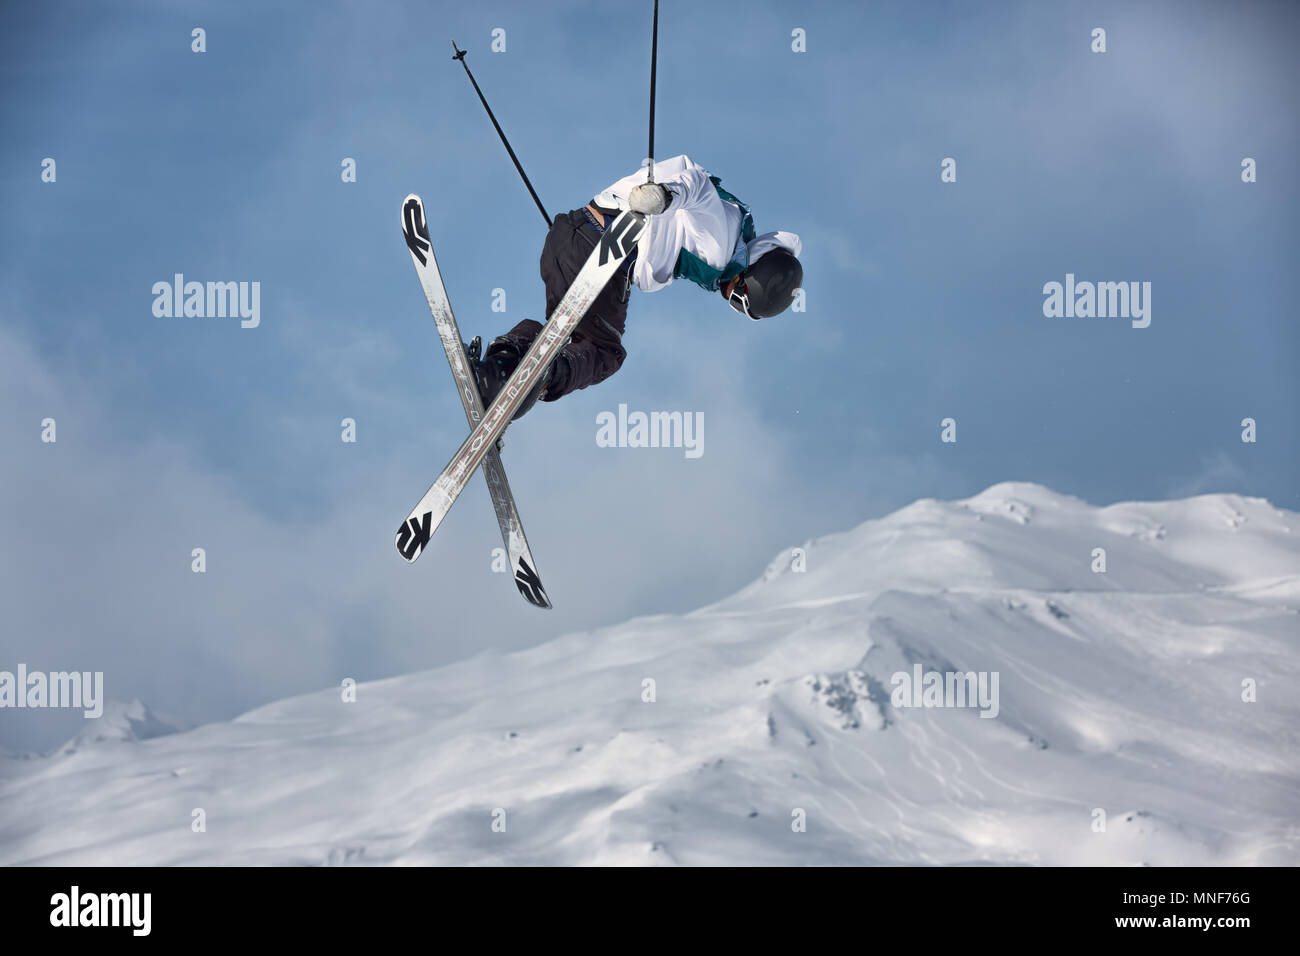 Slopestyle-Skiing Stock Photo